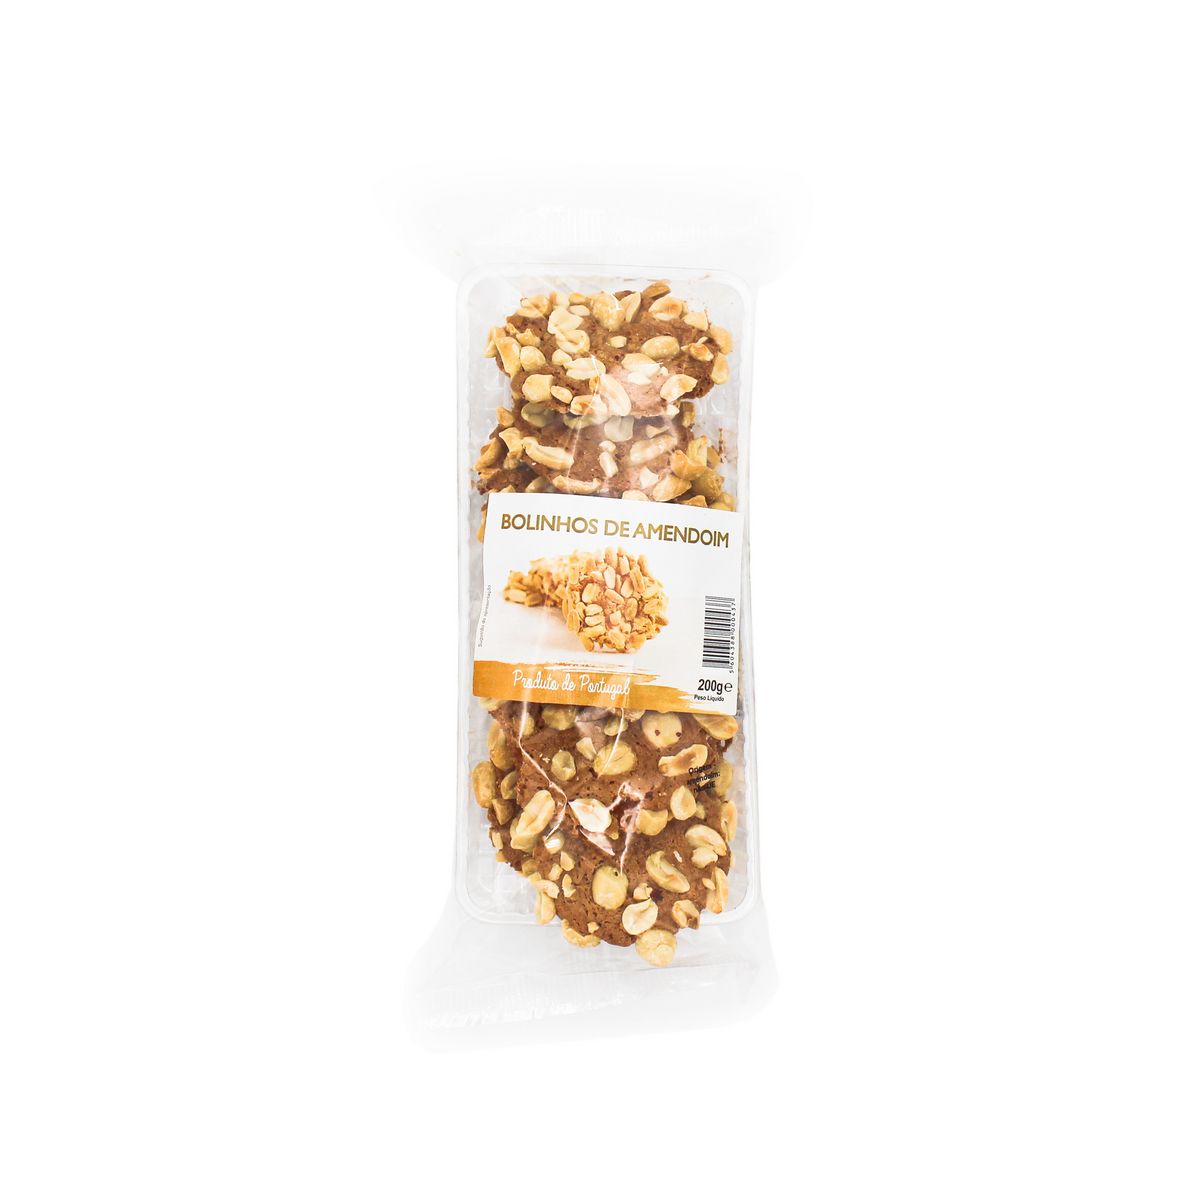 FABRIDOCE Bolinhos de amendoim 200g